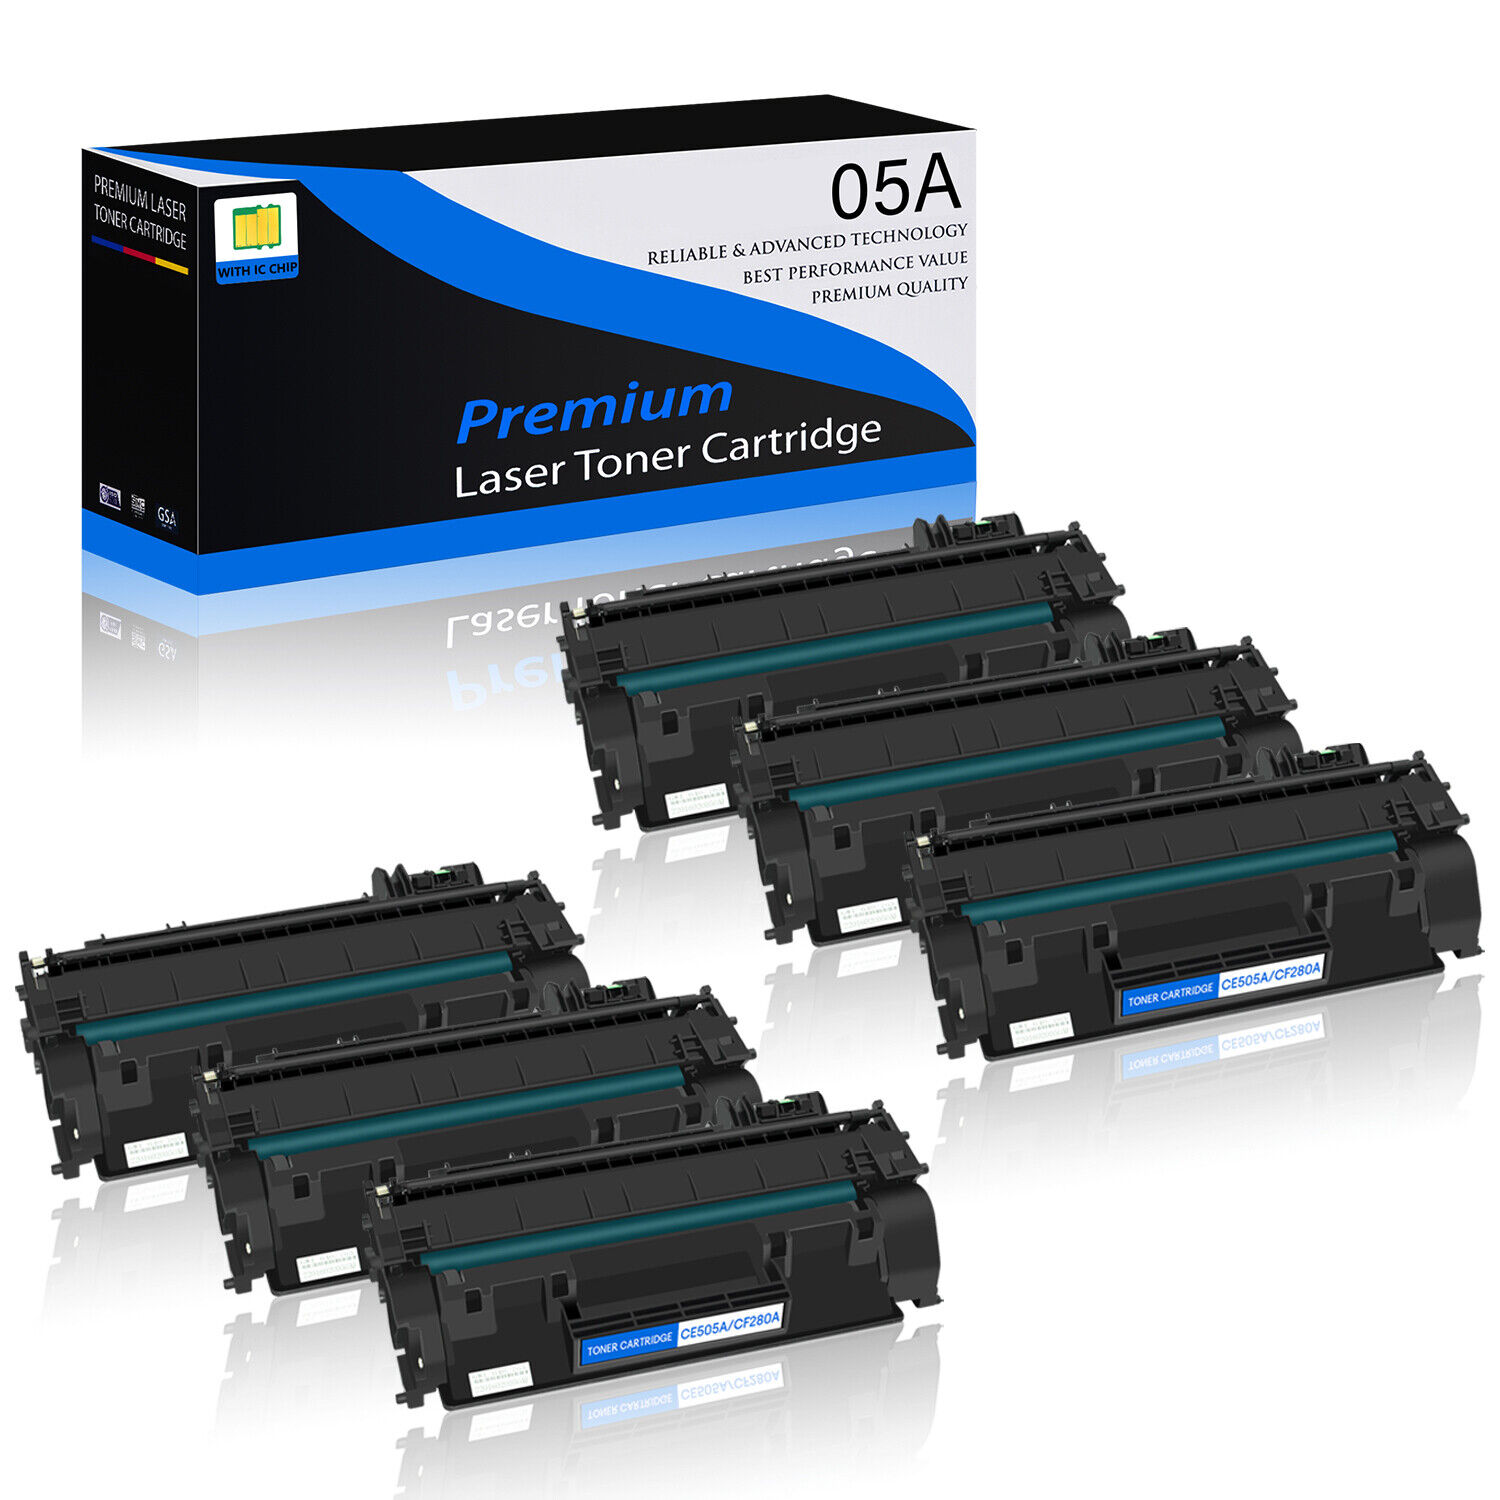 6PK CE505A 05A Toner Cartridge Compatible with HP LaserJet P2055d P2055n P2035